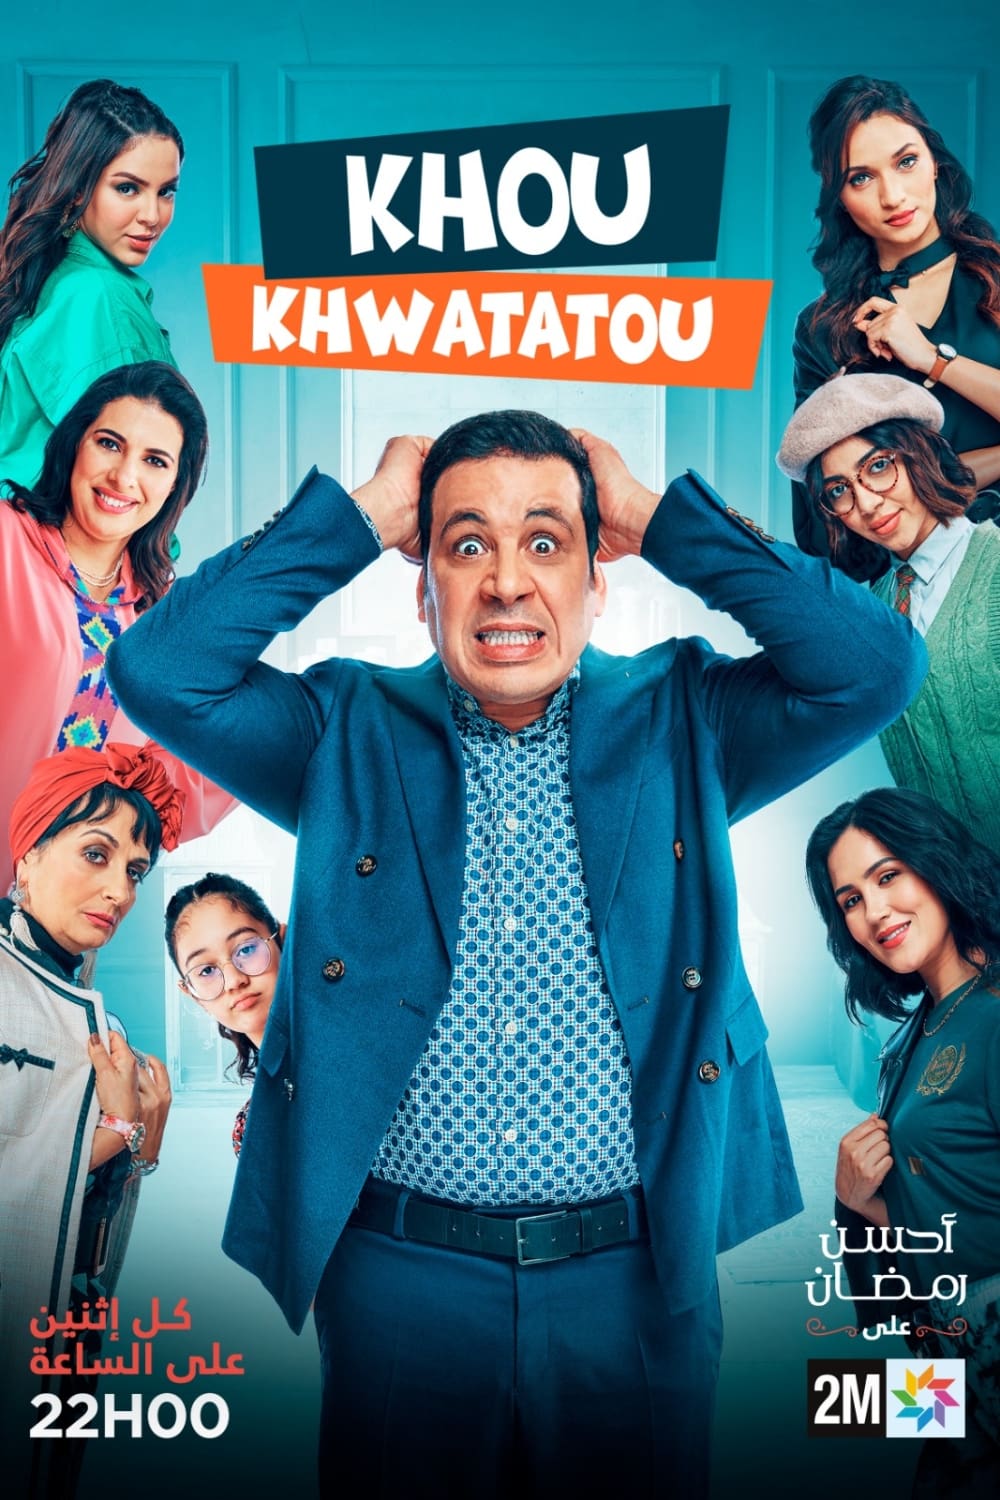 TV ratings for Khou Khwatatou (خو خواتاتو) in Francia. 2M TV series